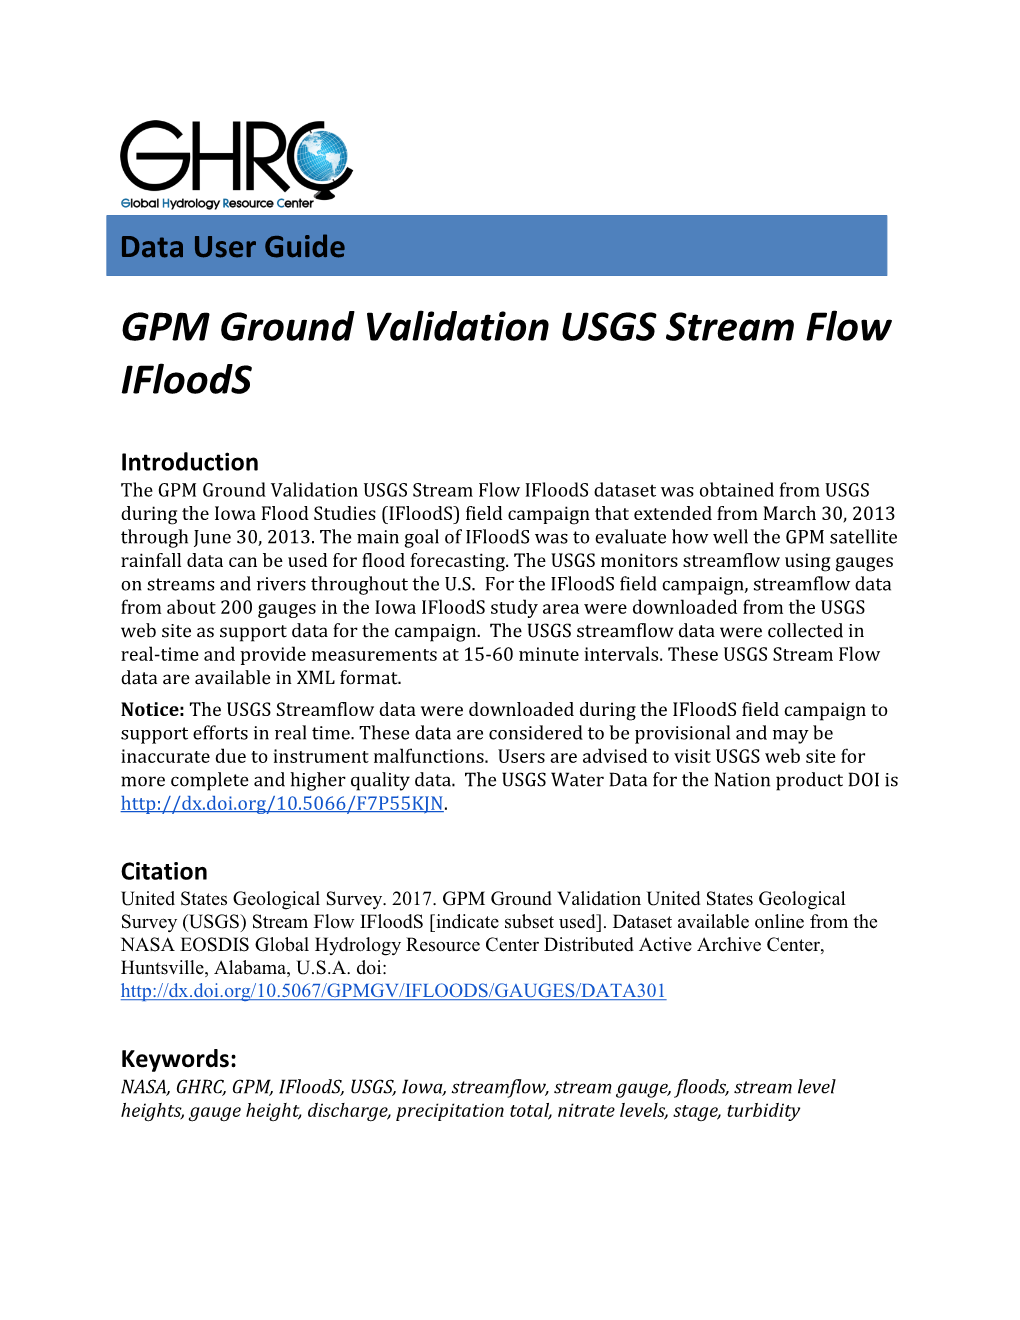 GPM Ground Validation USGS Stream Flow Ifloods